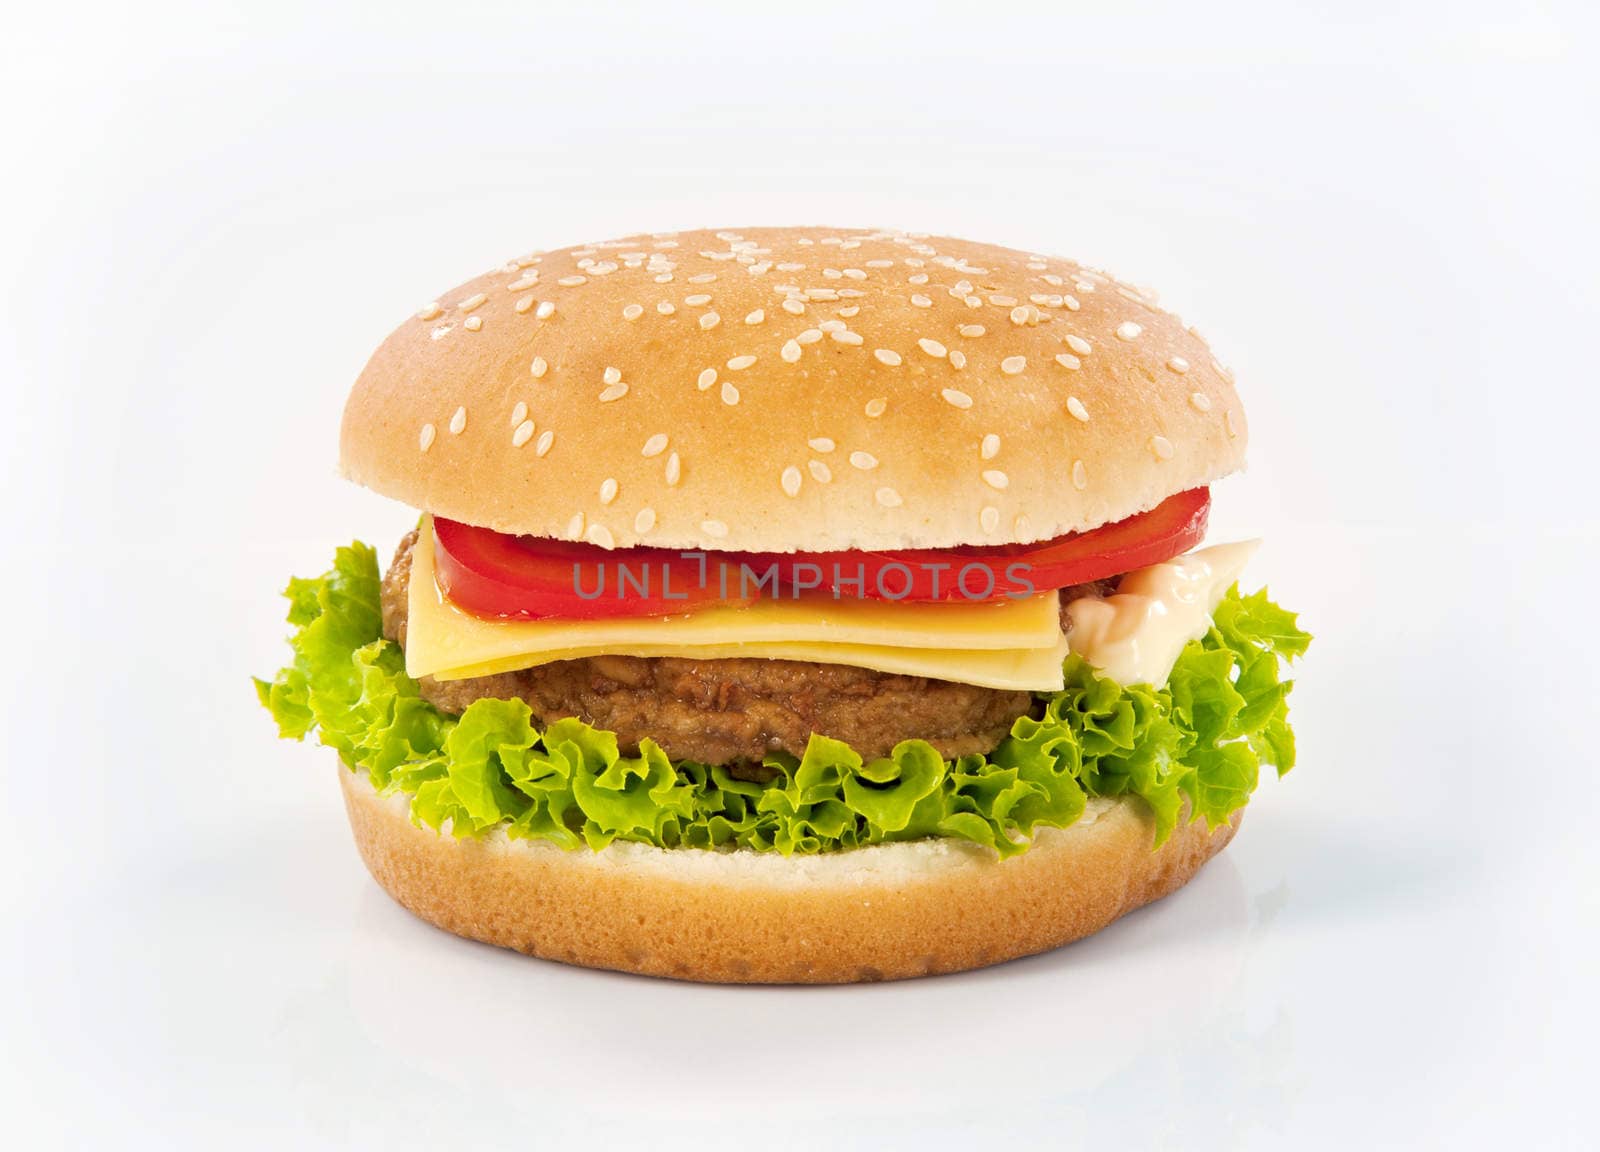 Studio shot of a hamburger - closeup